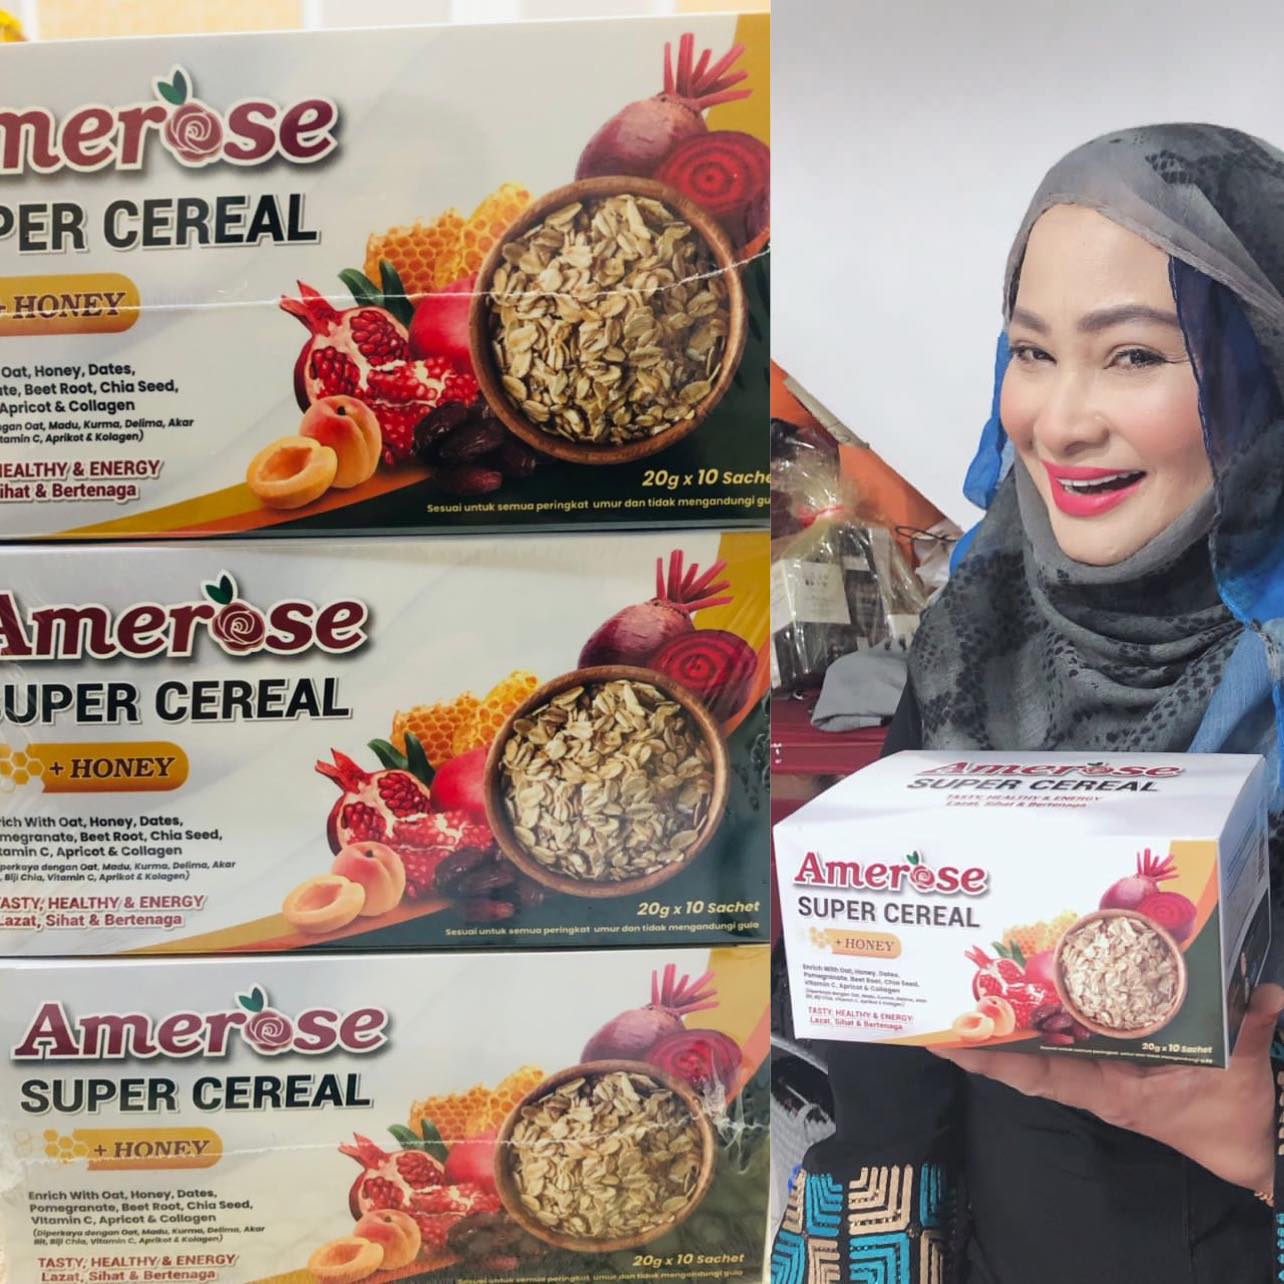 Amerose Super Cereal - Rosecun Bangunkan Semula Produk Amerose Super Cereal